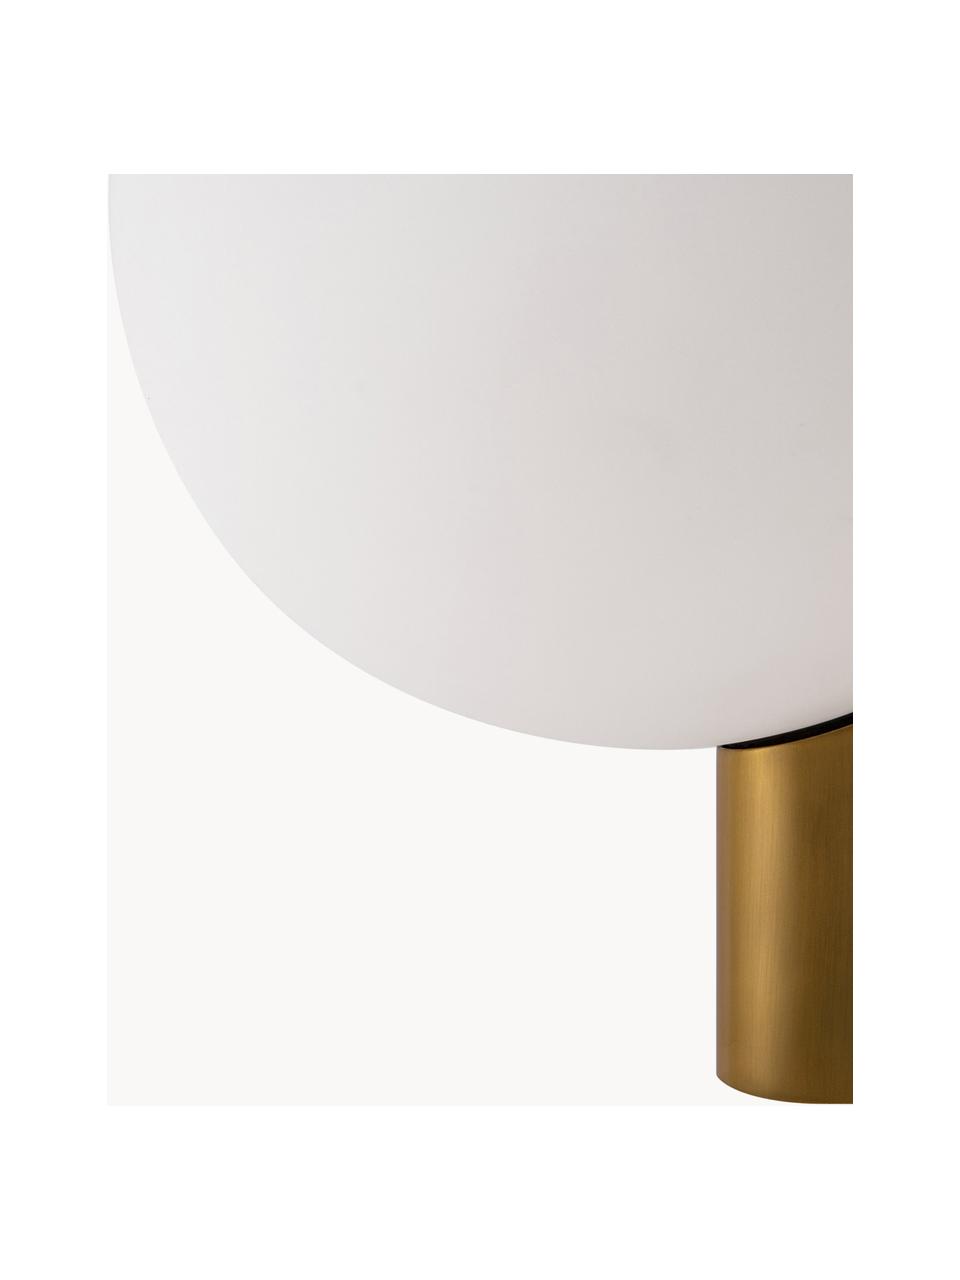 Glas-Wandleuchte Avant, Diffusorscheibe: Glas, Weiß, Goldfarben, B 18 x T 22 cm